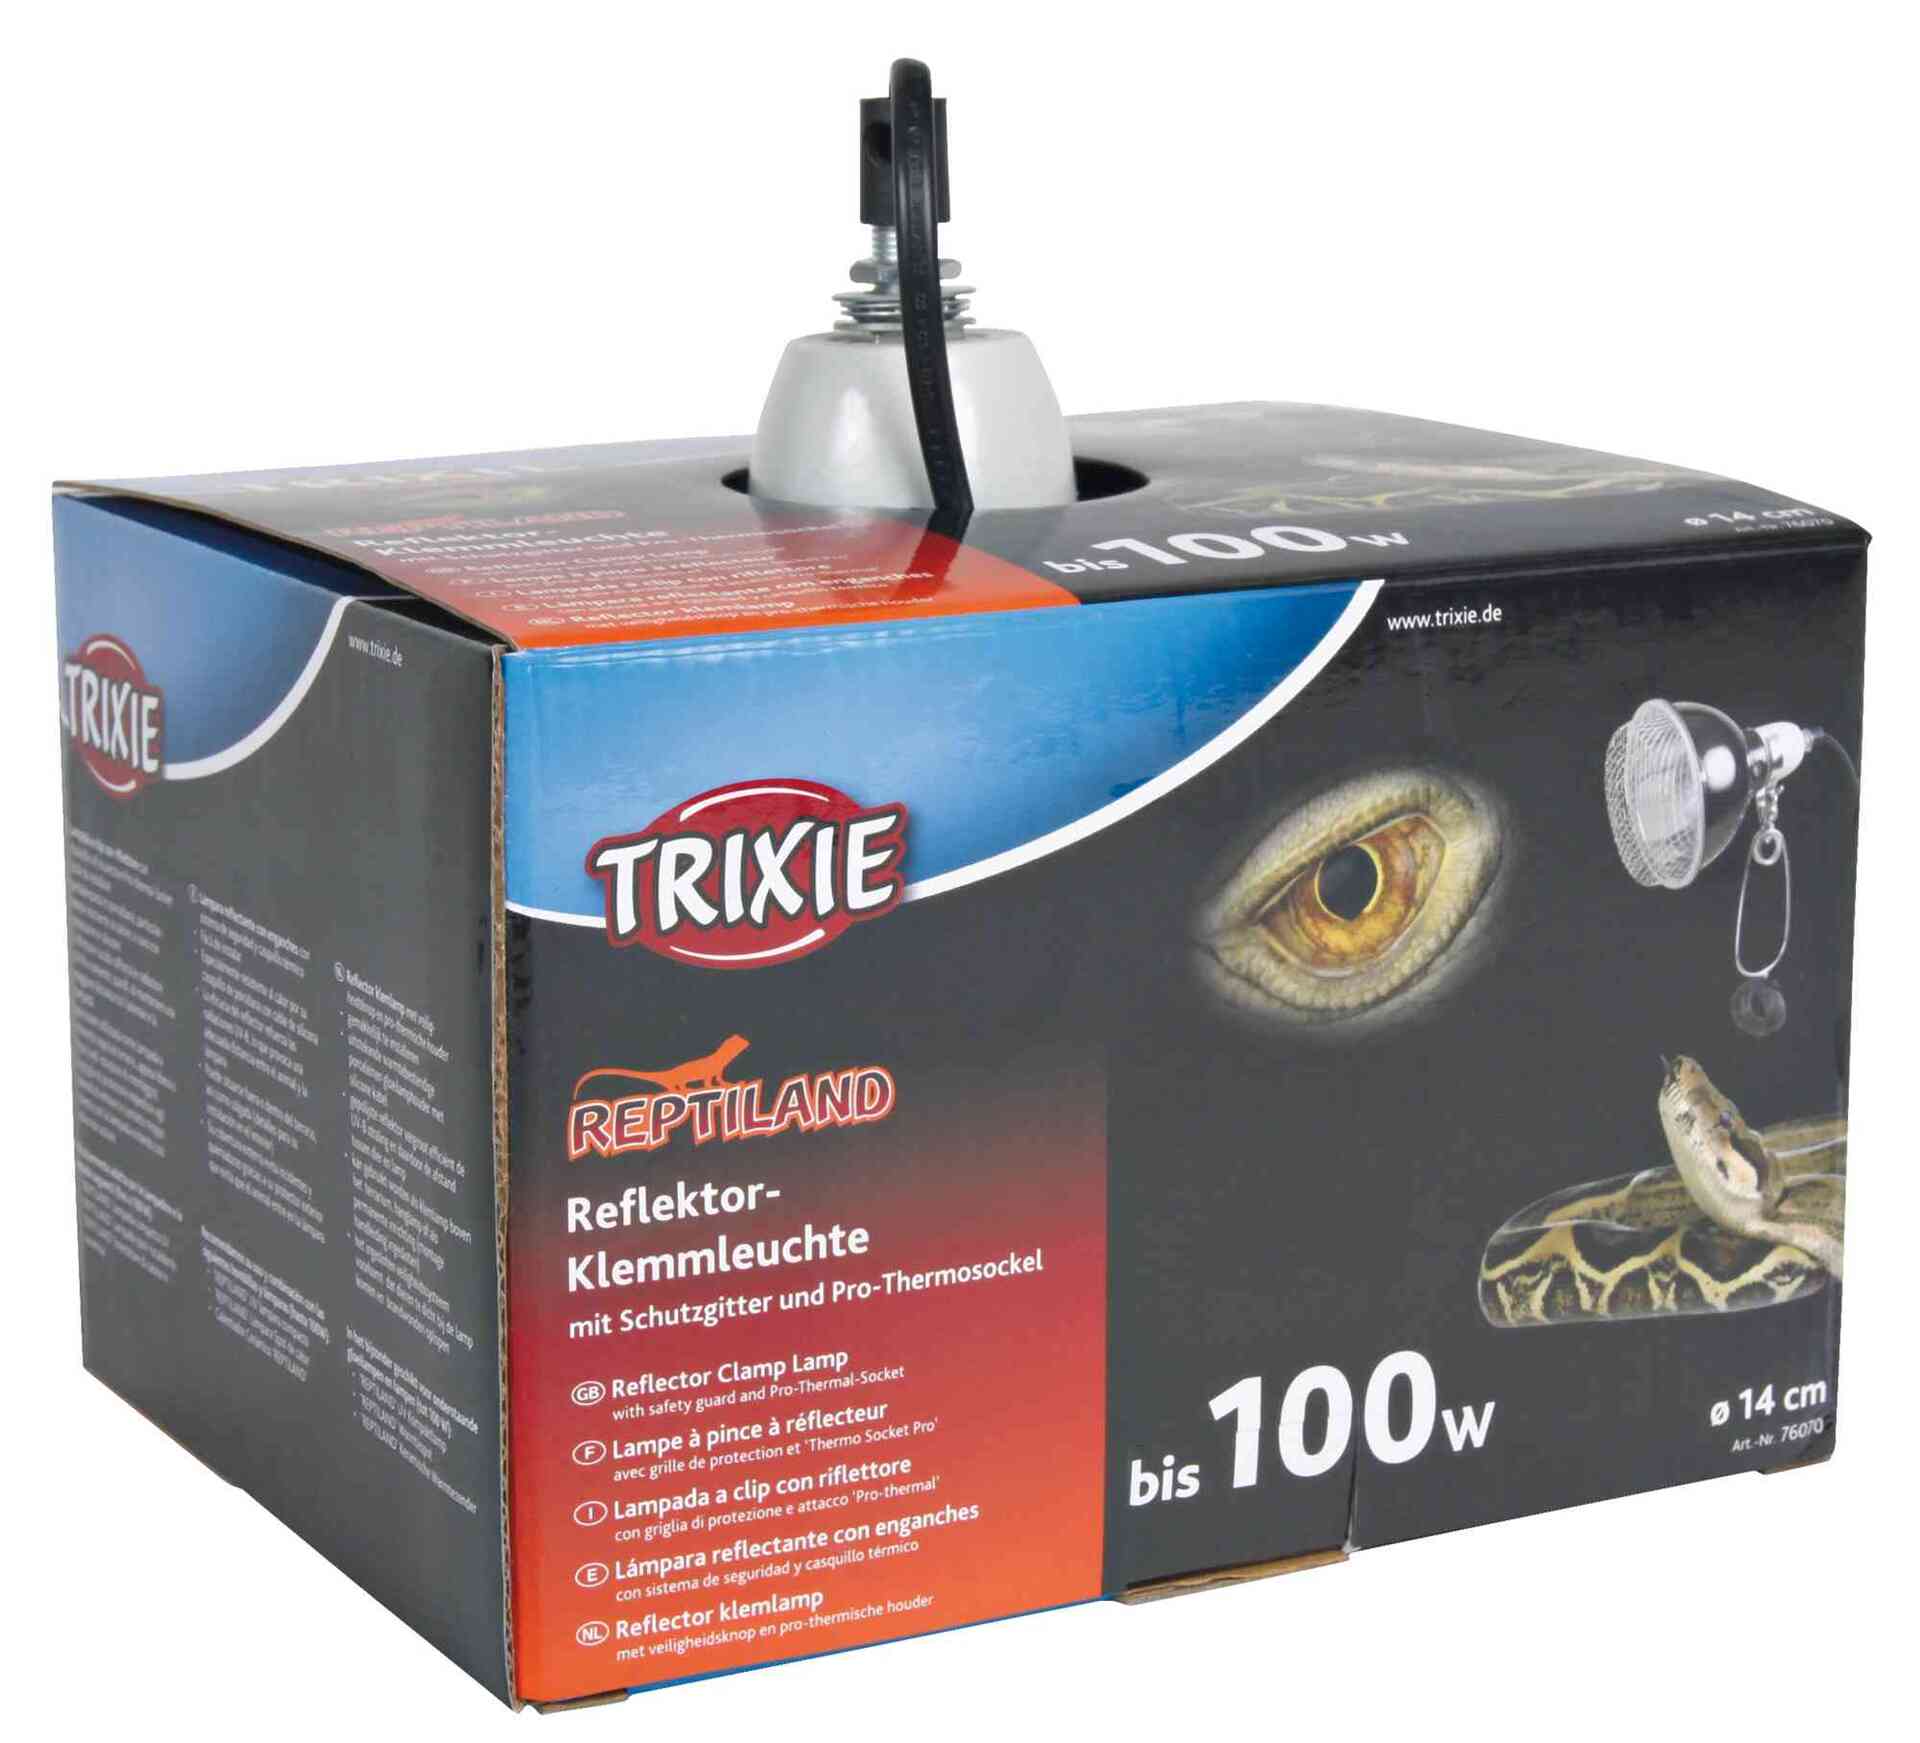 TRIXIE Reflektor-Klemmleuchte mit Schutzgitter